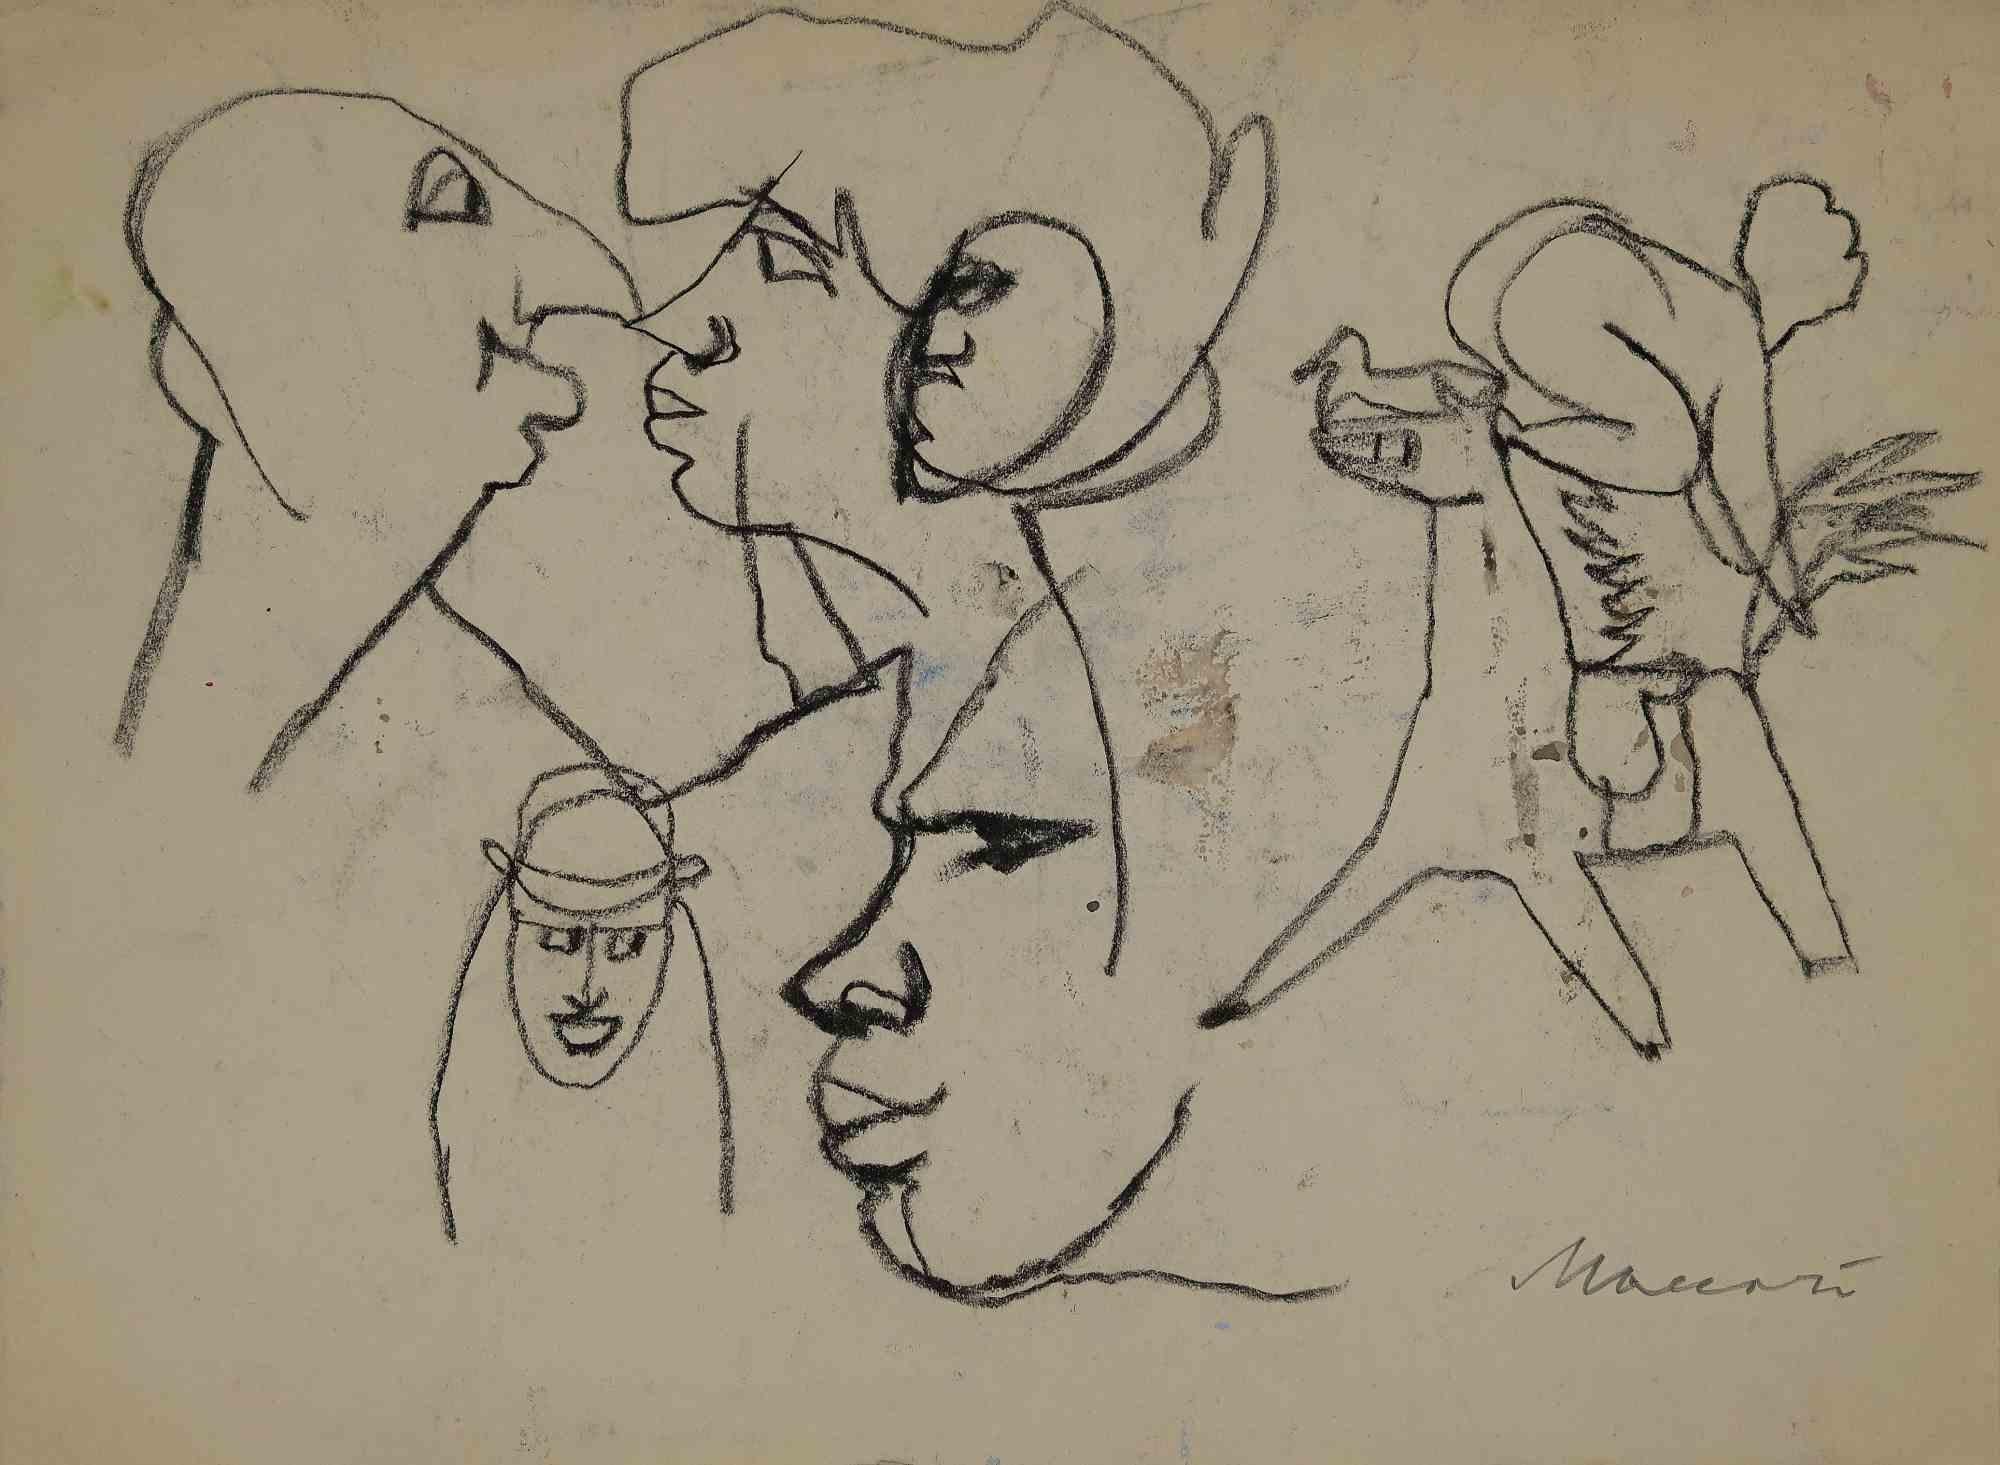 Sketches est un dessin original au fusain réalisé par Mino Maccari au milieu du 20e siècle.

Bon état sauf quelques taches sur un papier blanc.

Signé à la main par l'artiste au crayon.

Mino Maccari (1898-1989) était un écrivain, peintre, graveur